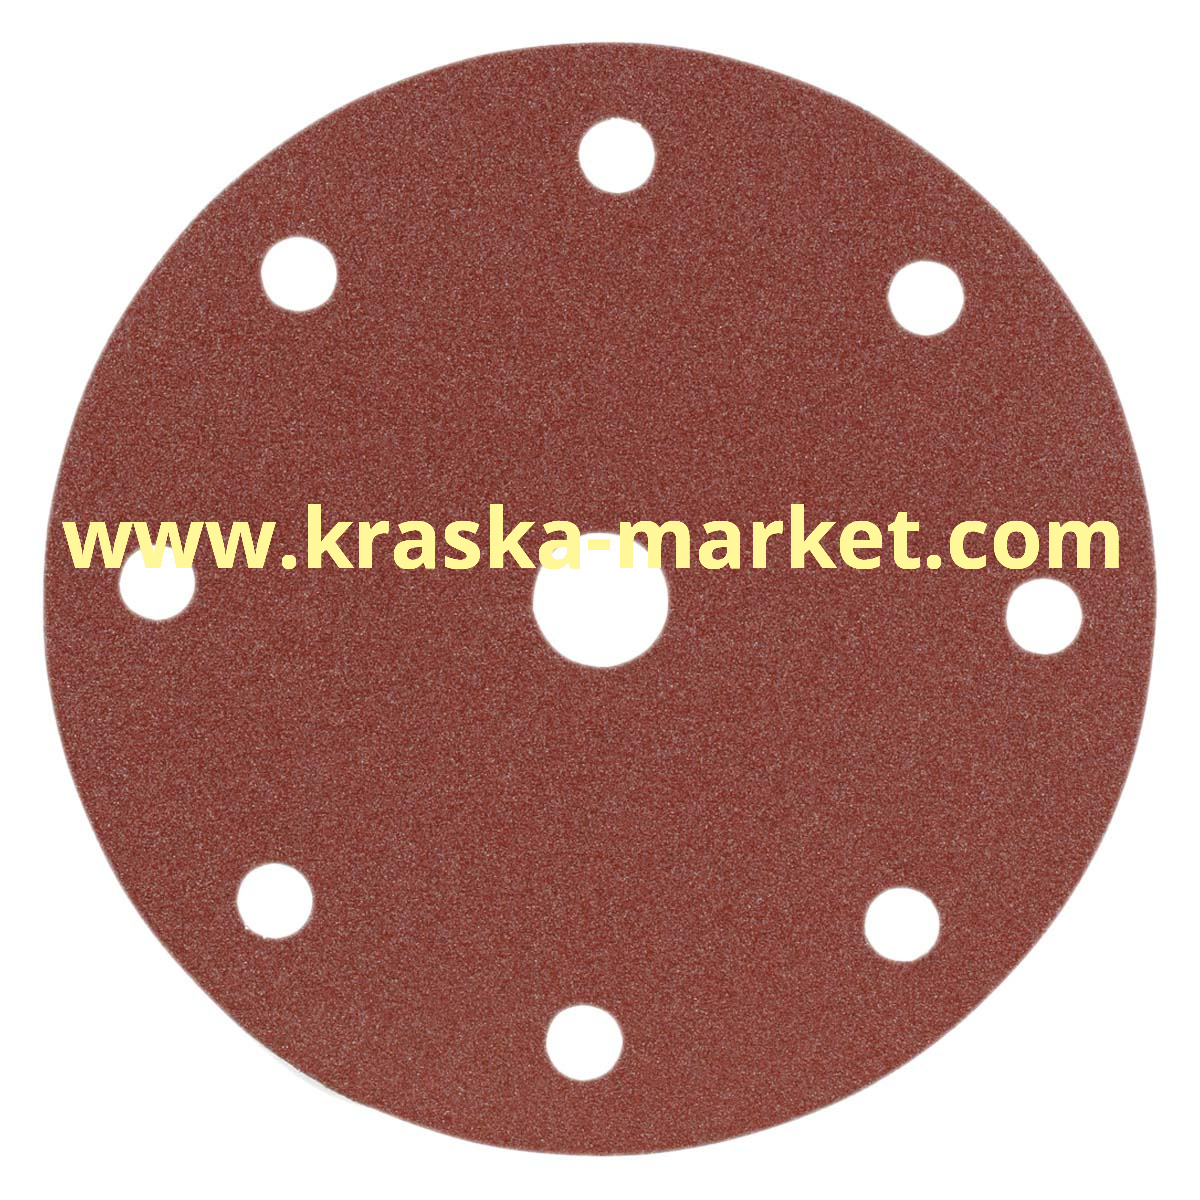 Круг абразивный, красный, 15 отверстий, Р280, 150 мм. Производитель: Indasa.